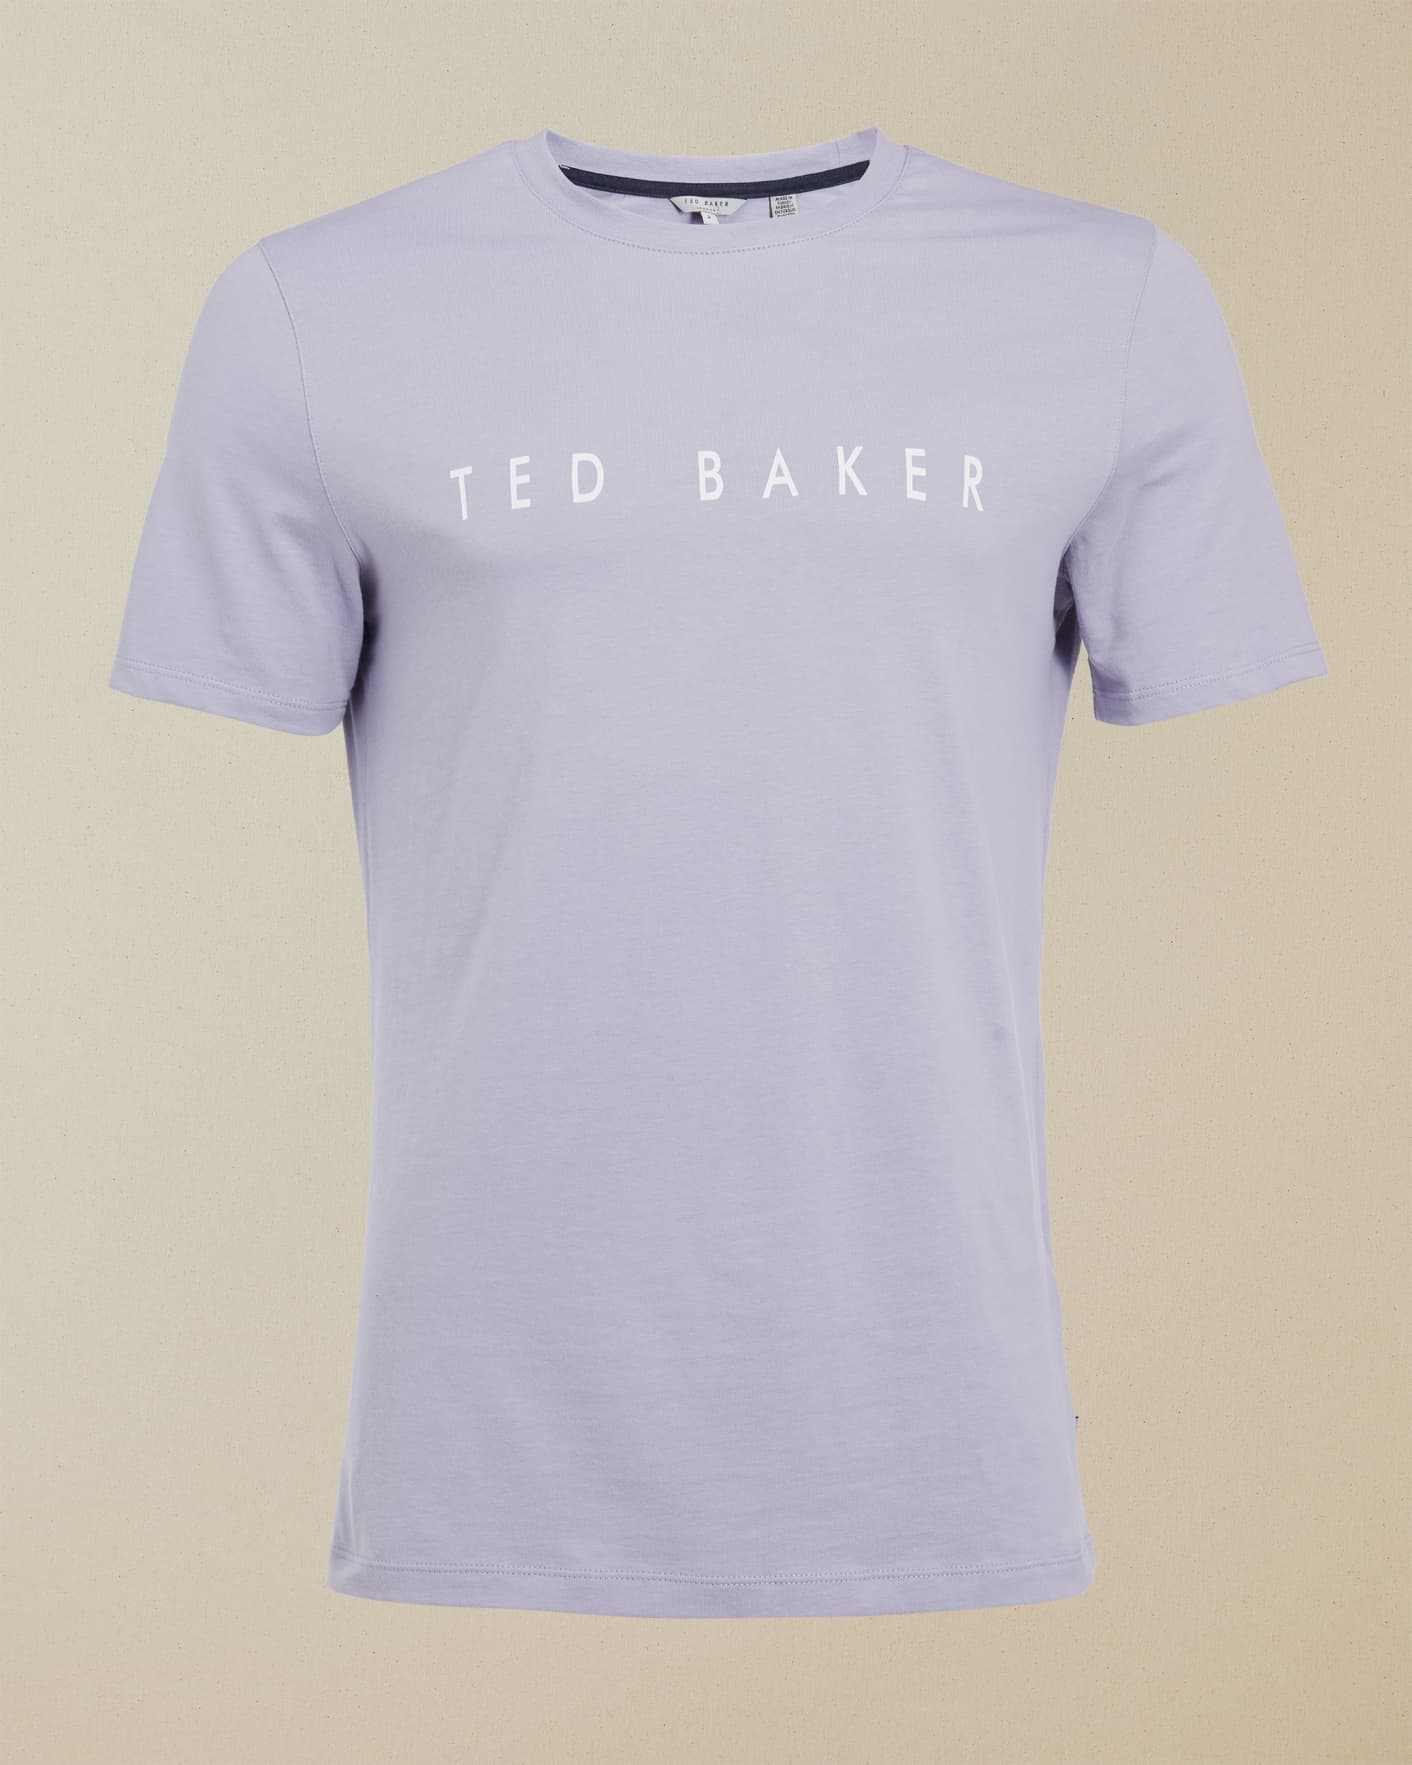 Lilas Tee Shirt En Coton Ted Baker